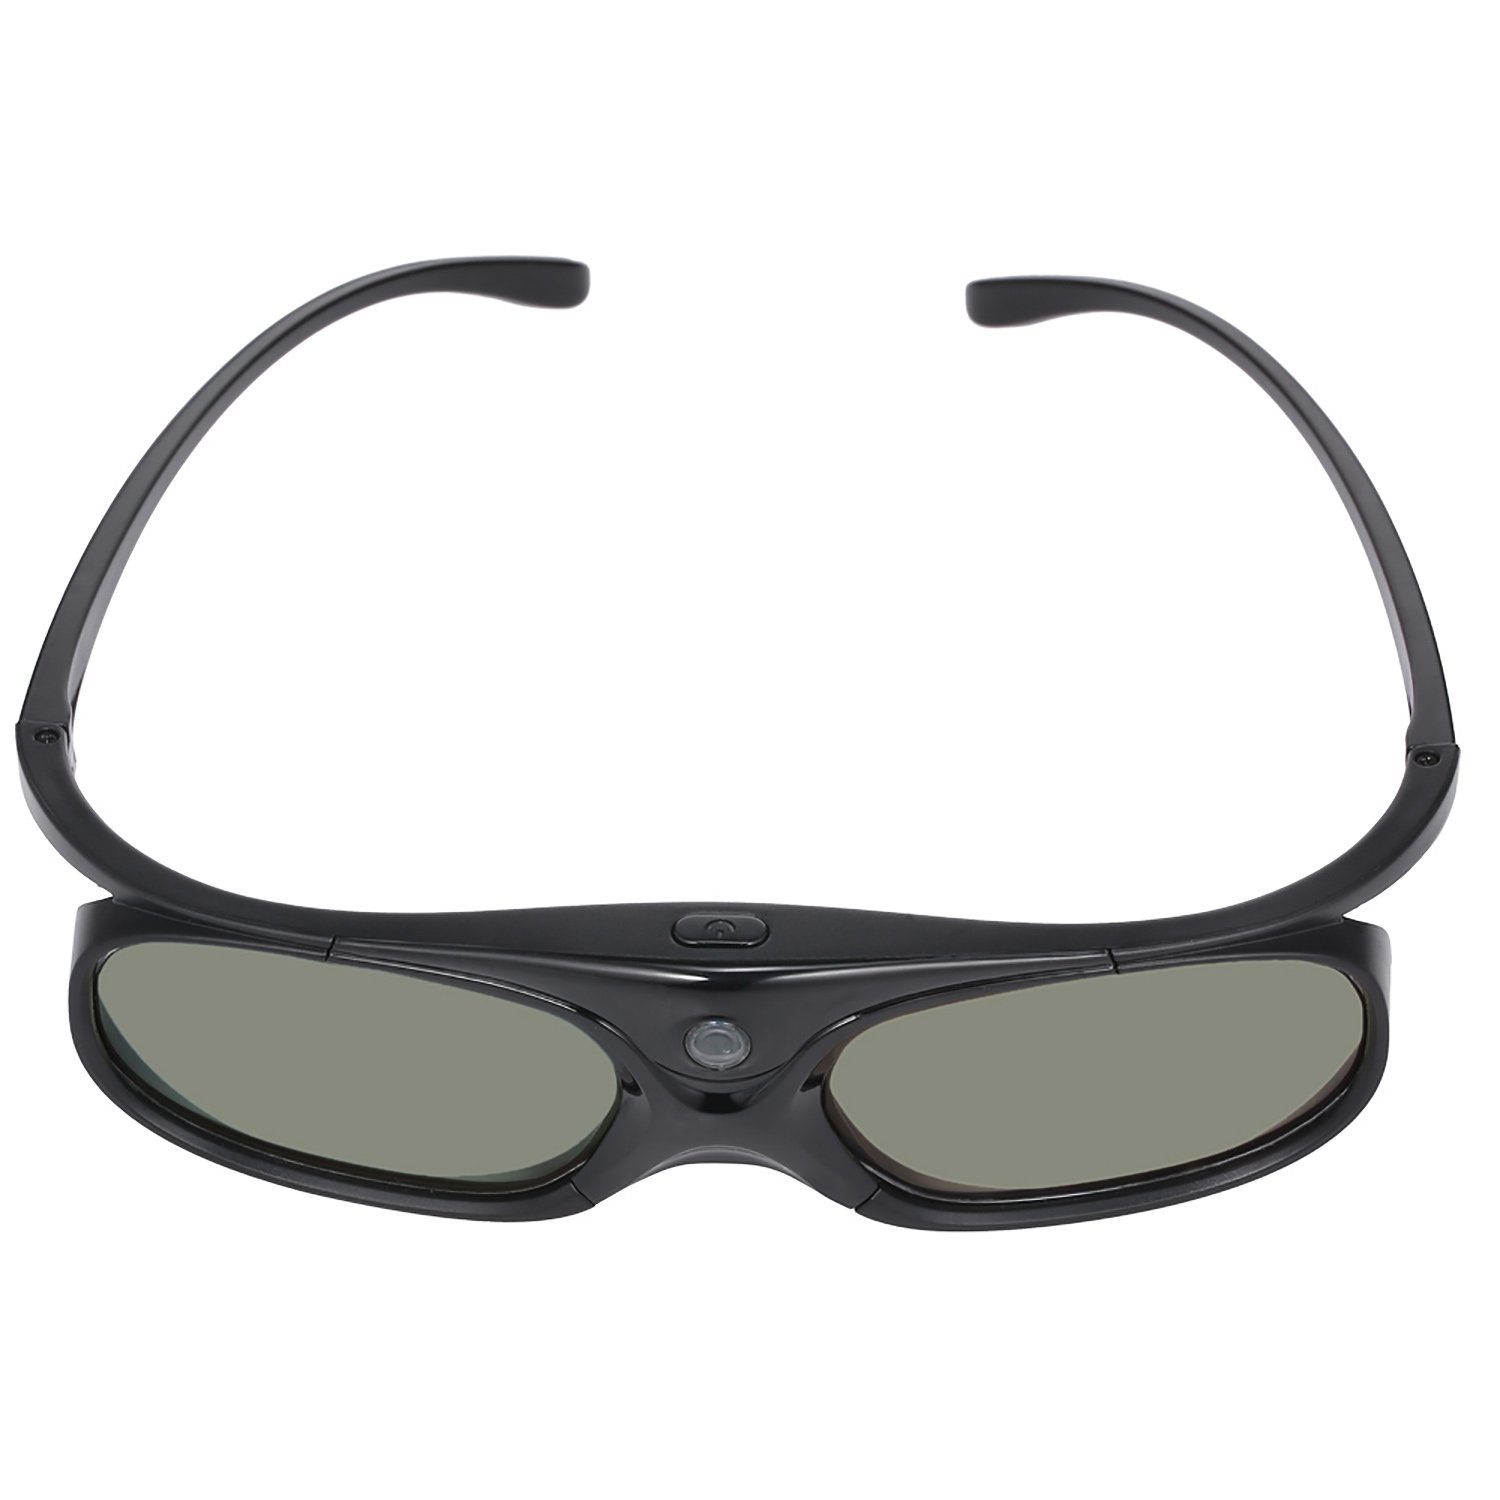 TPFNet 3D-Brille, Aktive 3D Shutter-Brille kompatibel mit DLP 3D Beamer von  Optama, Acer, BenQ, ViewSonic, Sharp und Dell - wiederaufladbar, DLP Link -  Schwarz - 1 Stück